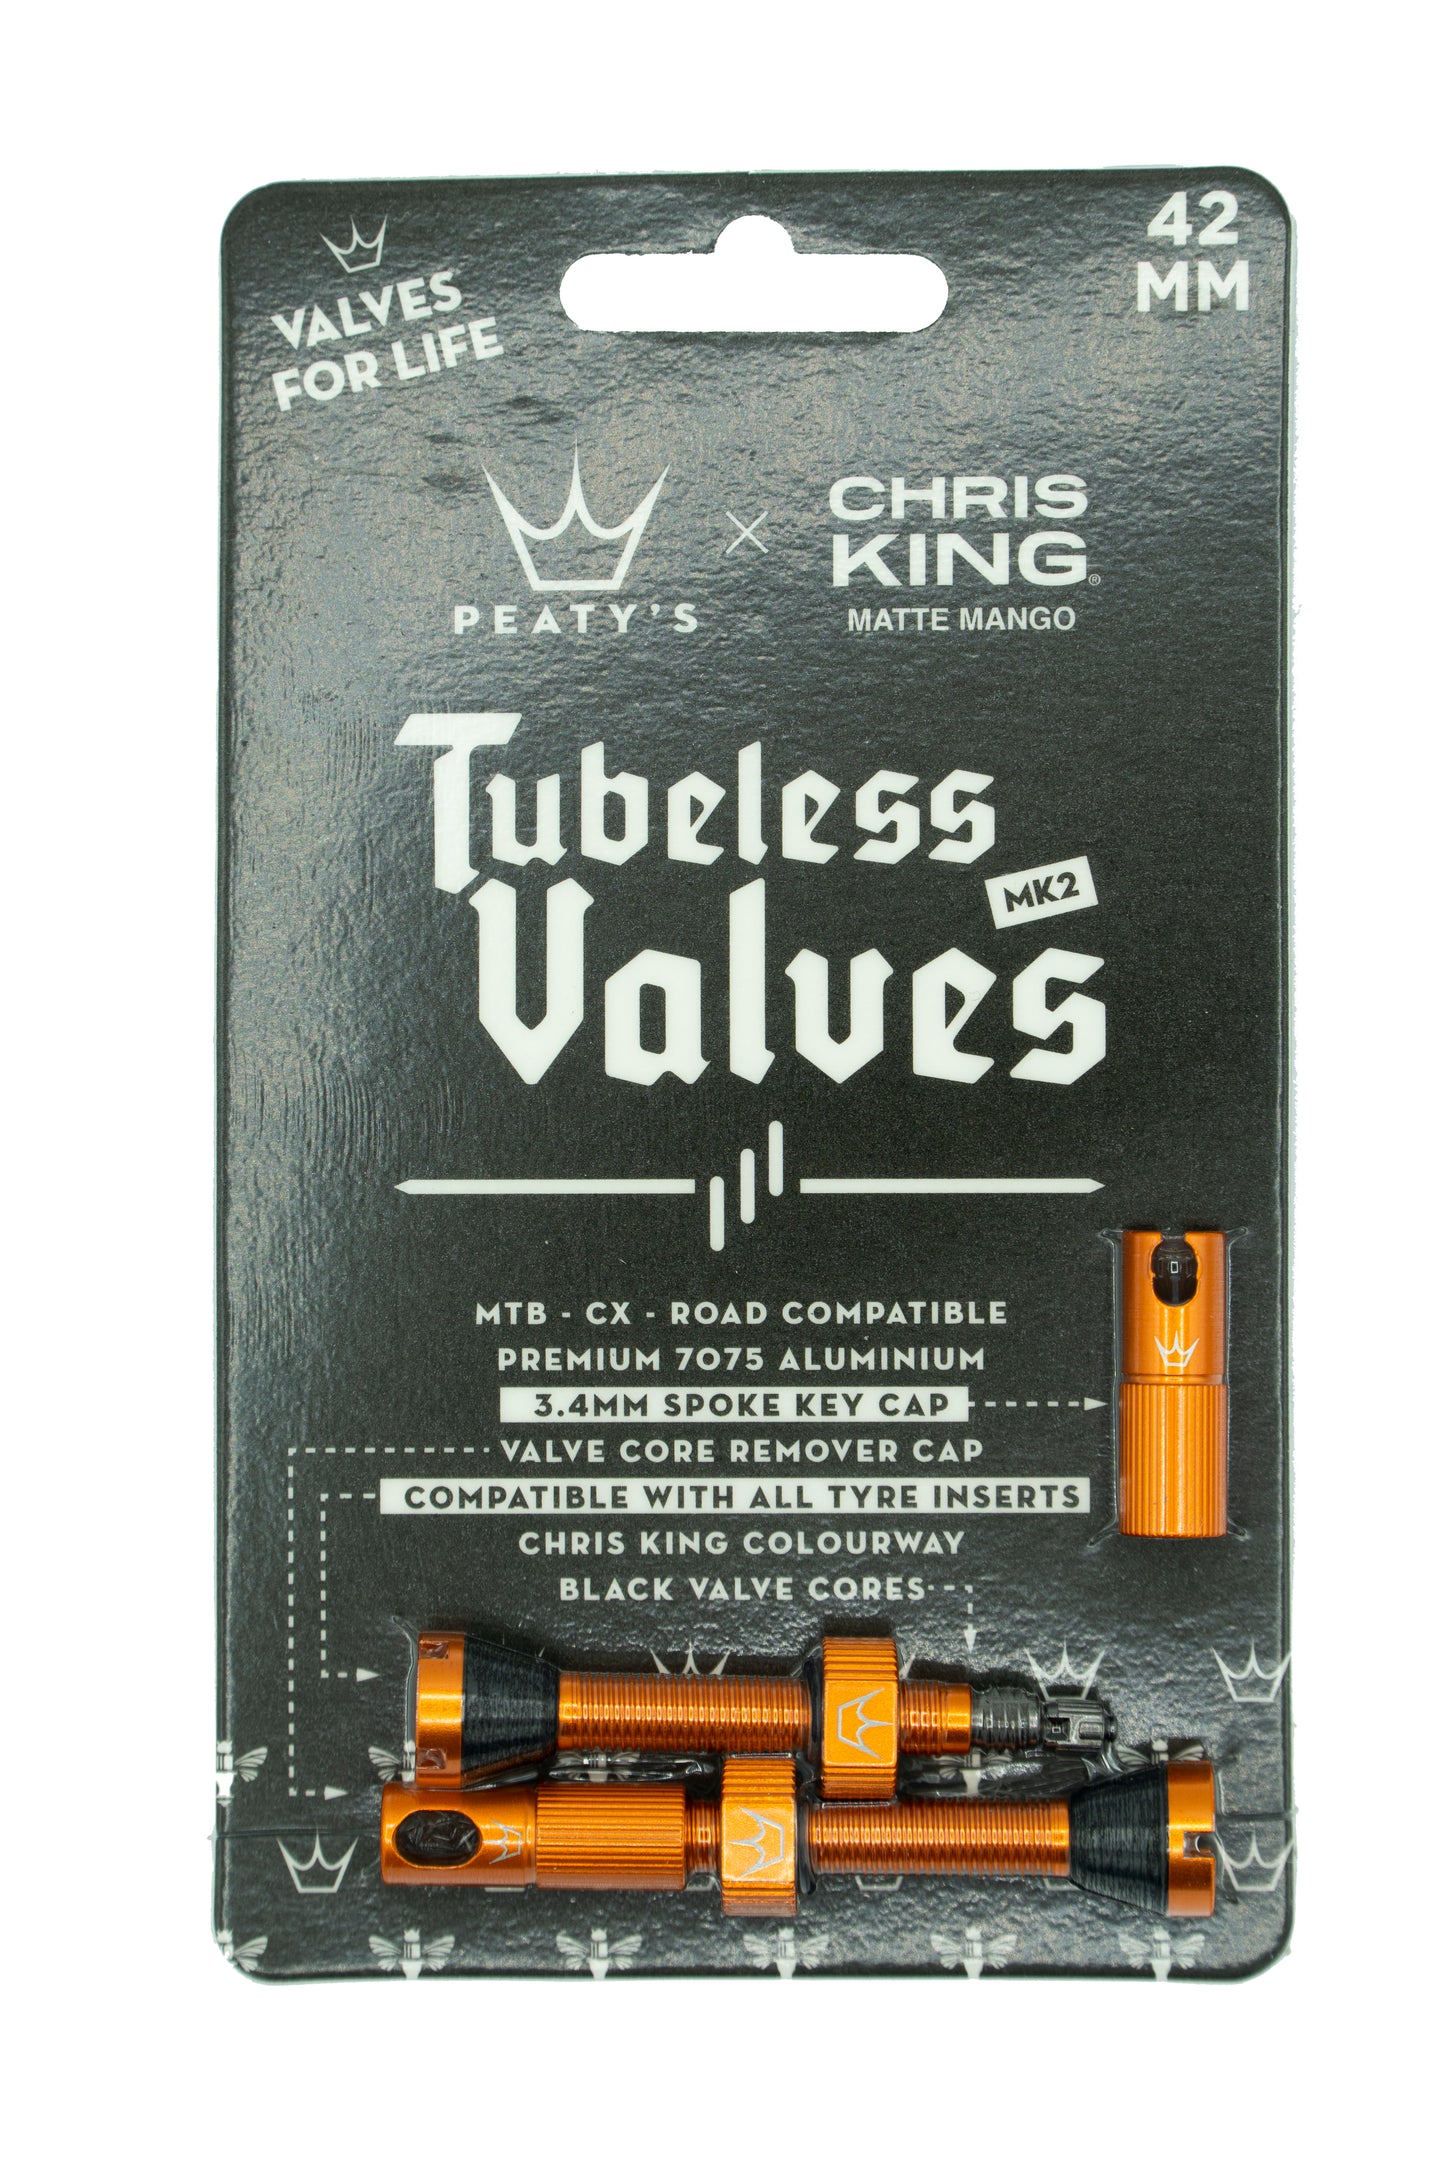 Peaty's Chris King Tubeless valves MK2 Mango - 42mm